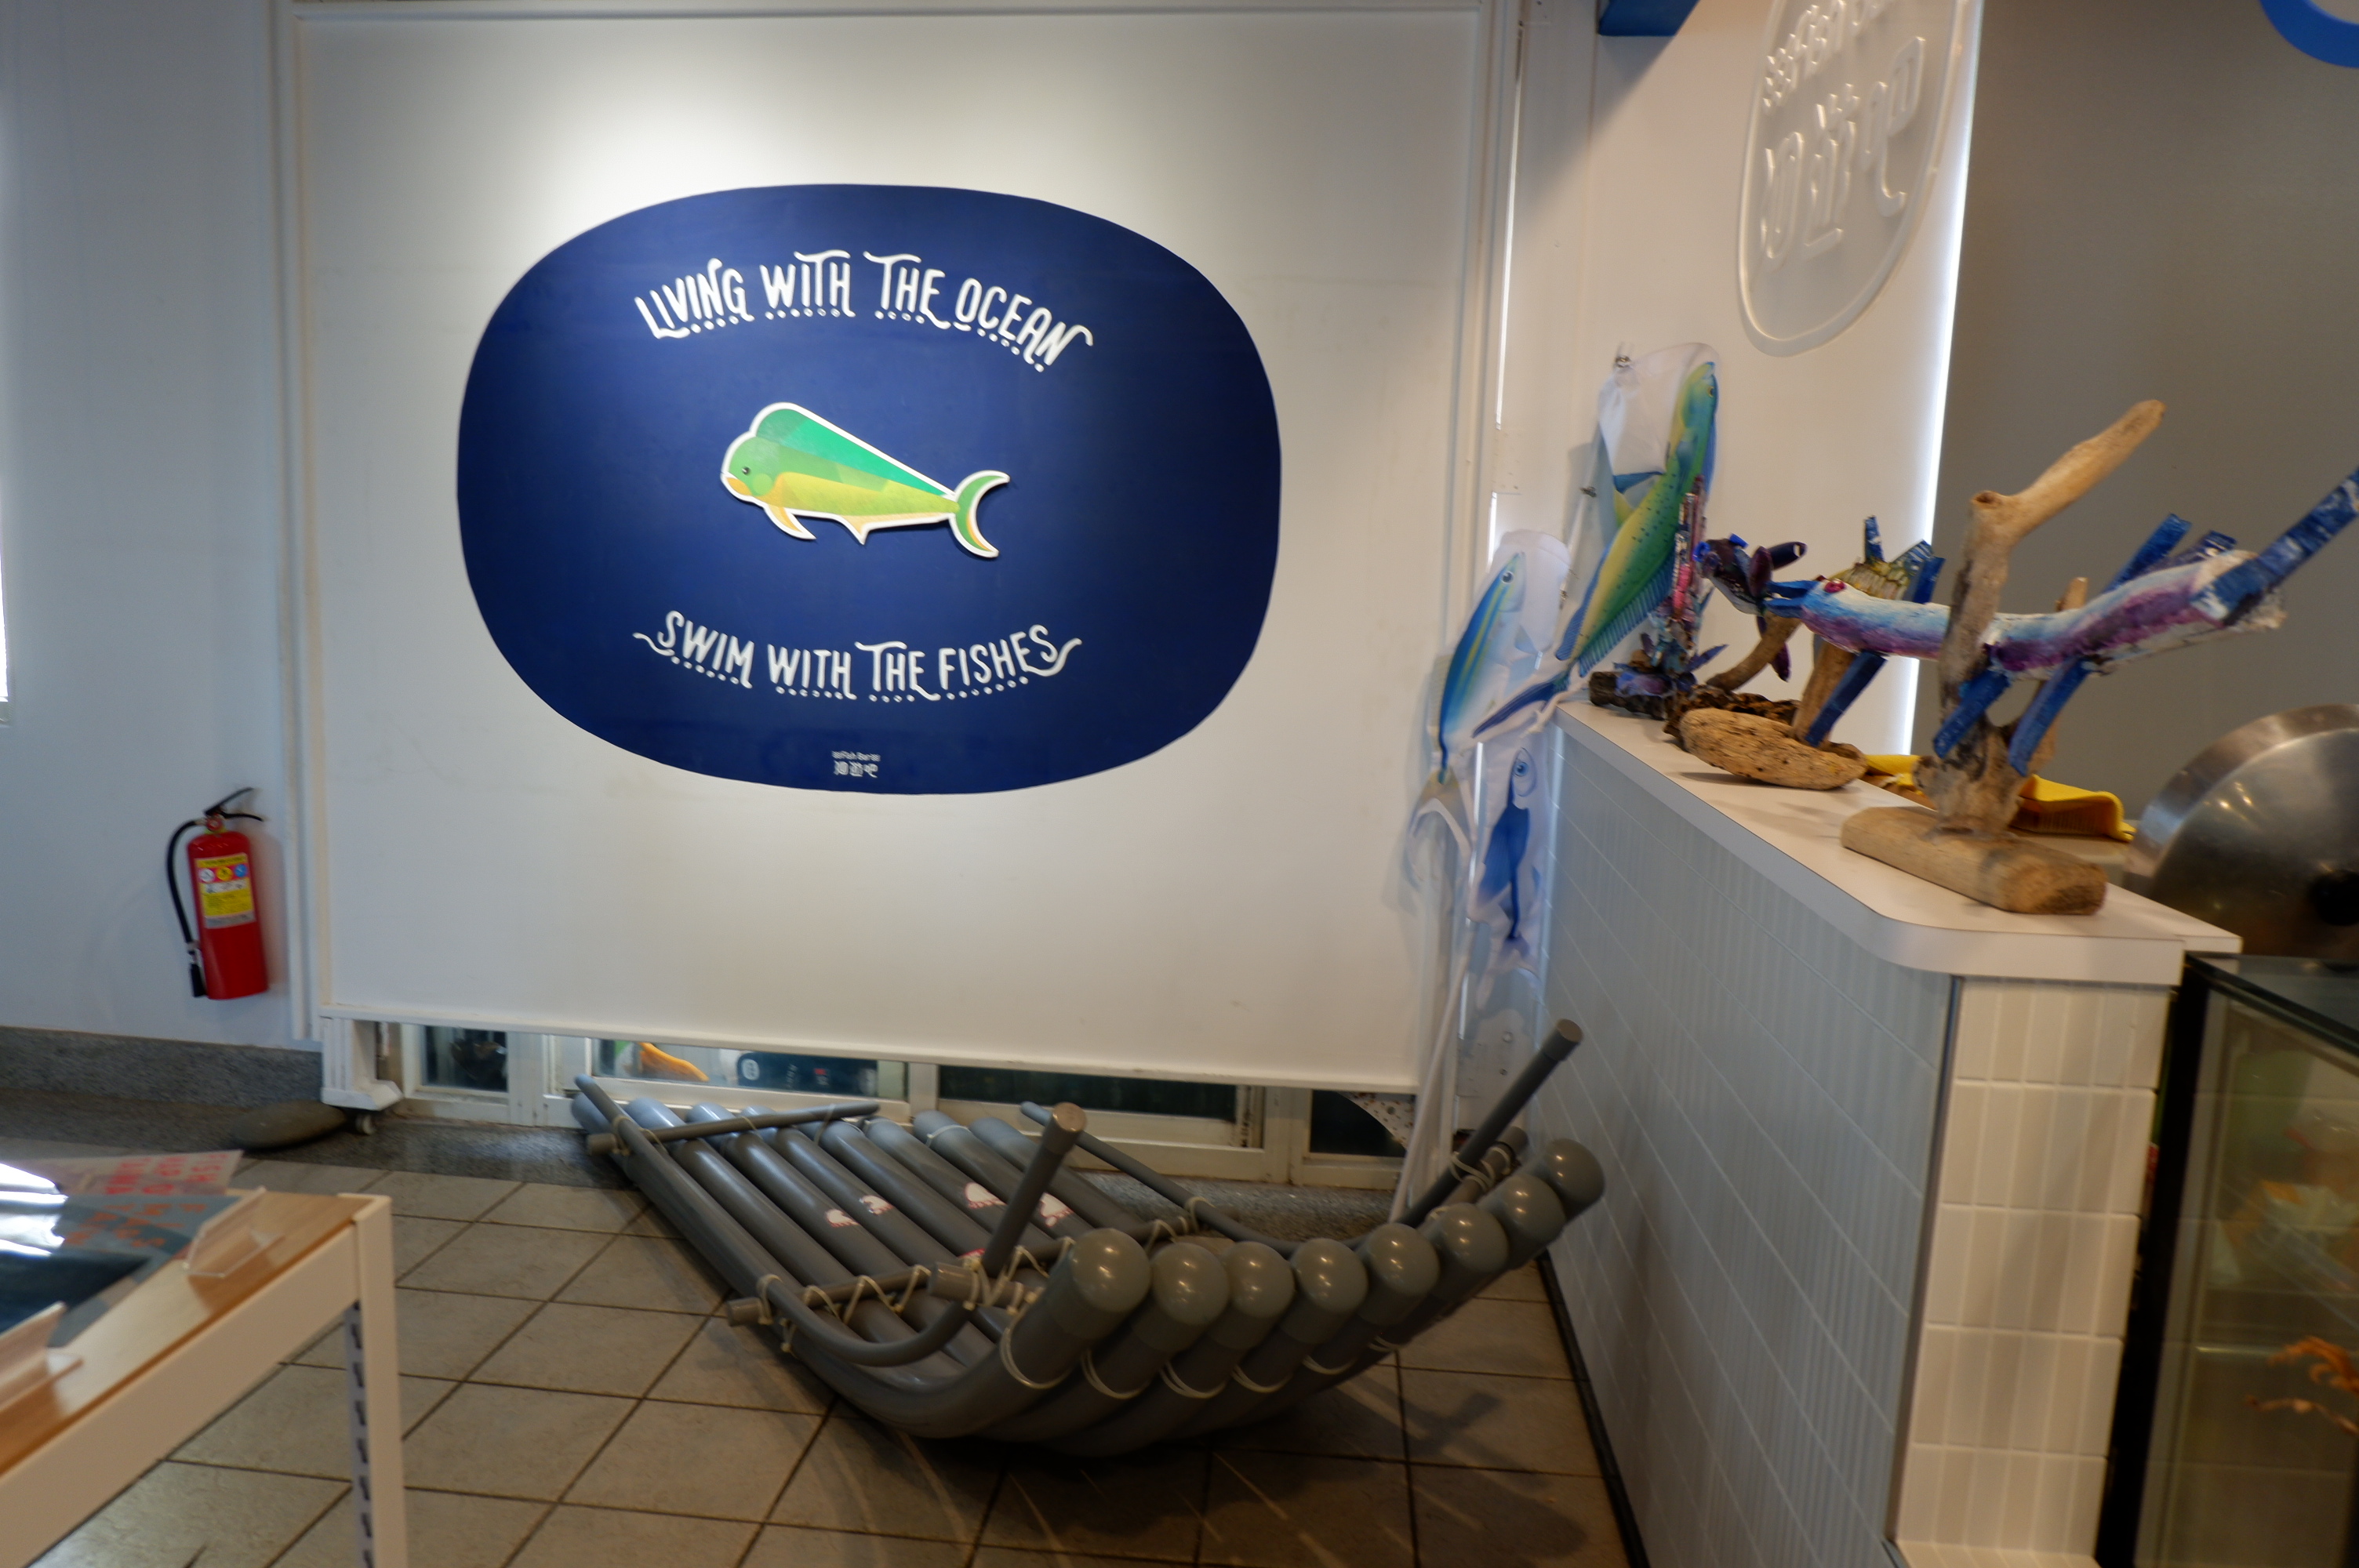 洄遊吧食魚體驗館入口裝設當季魚種圖像.jpg